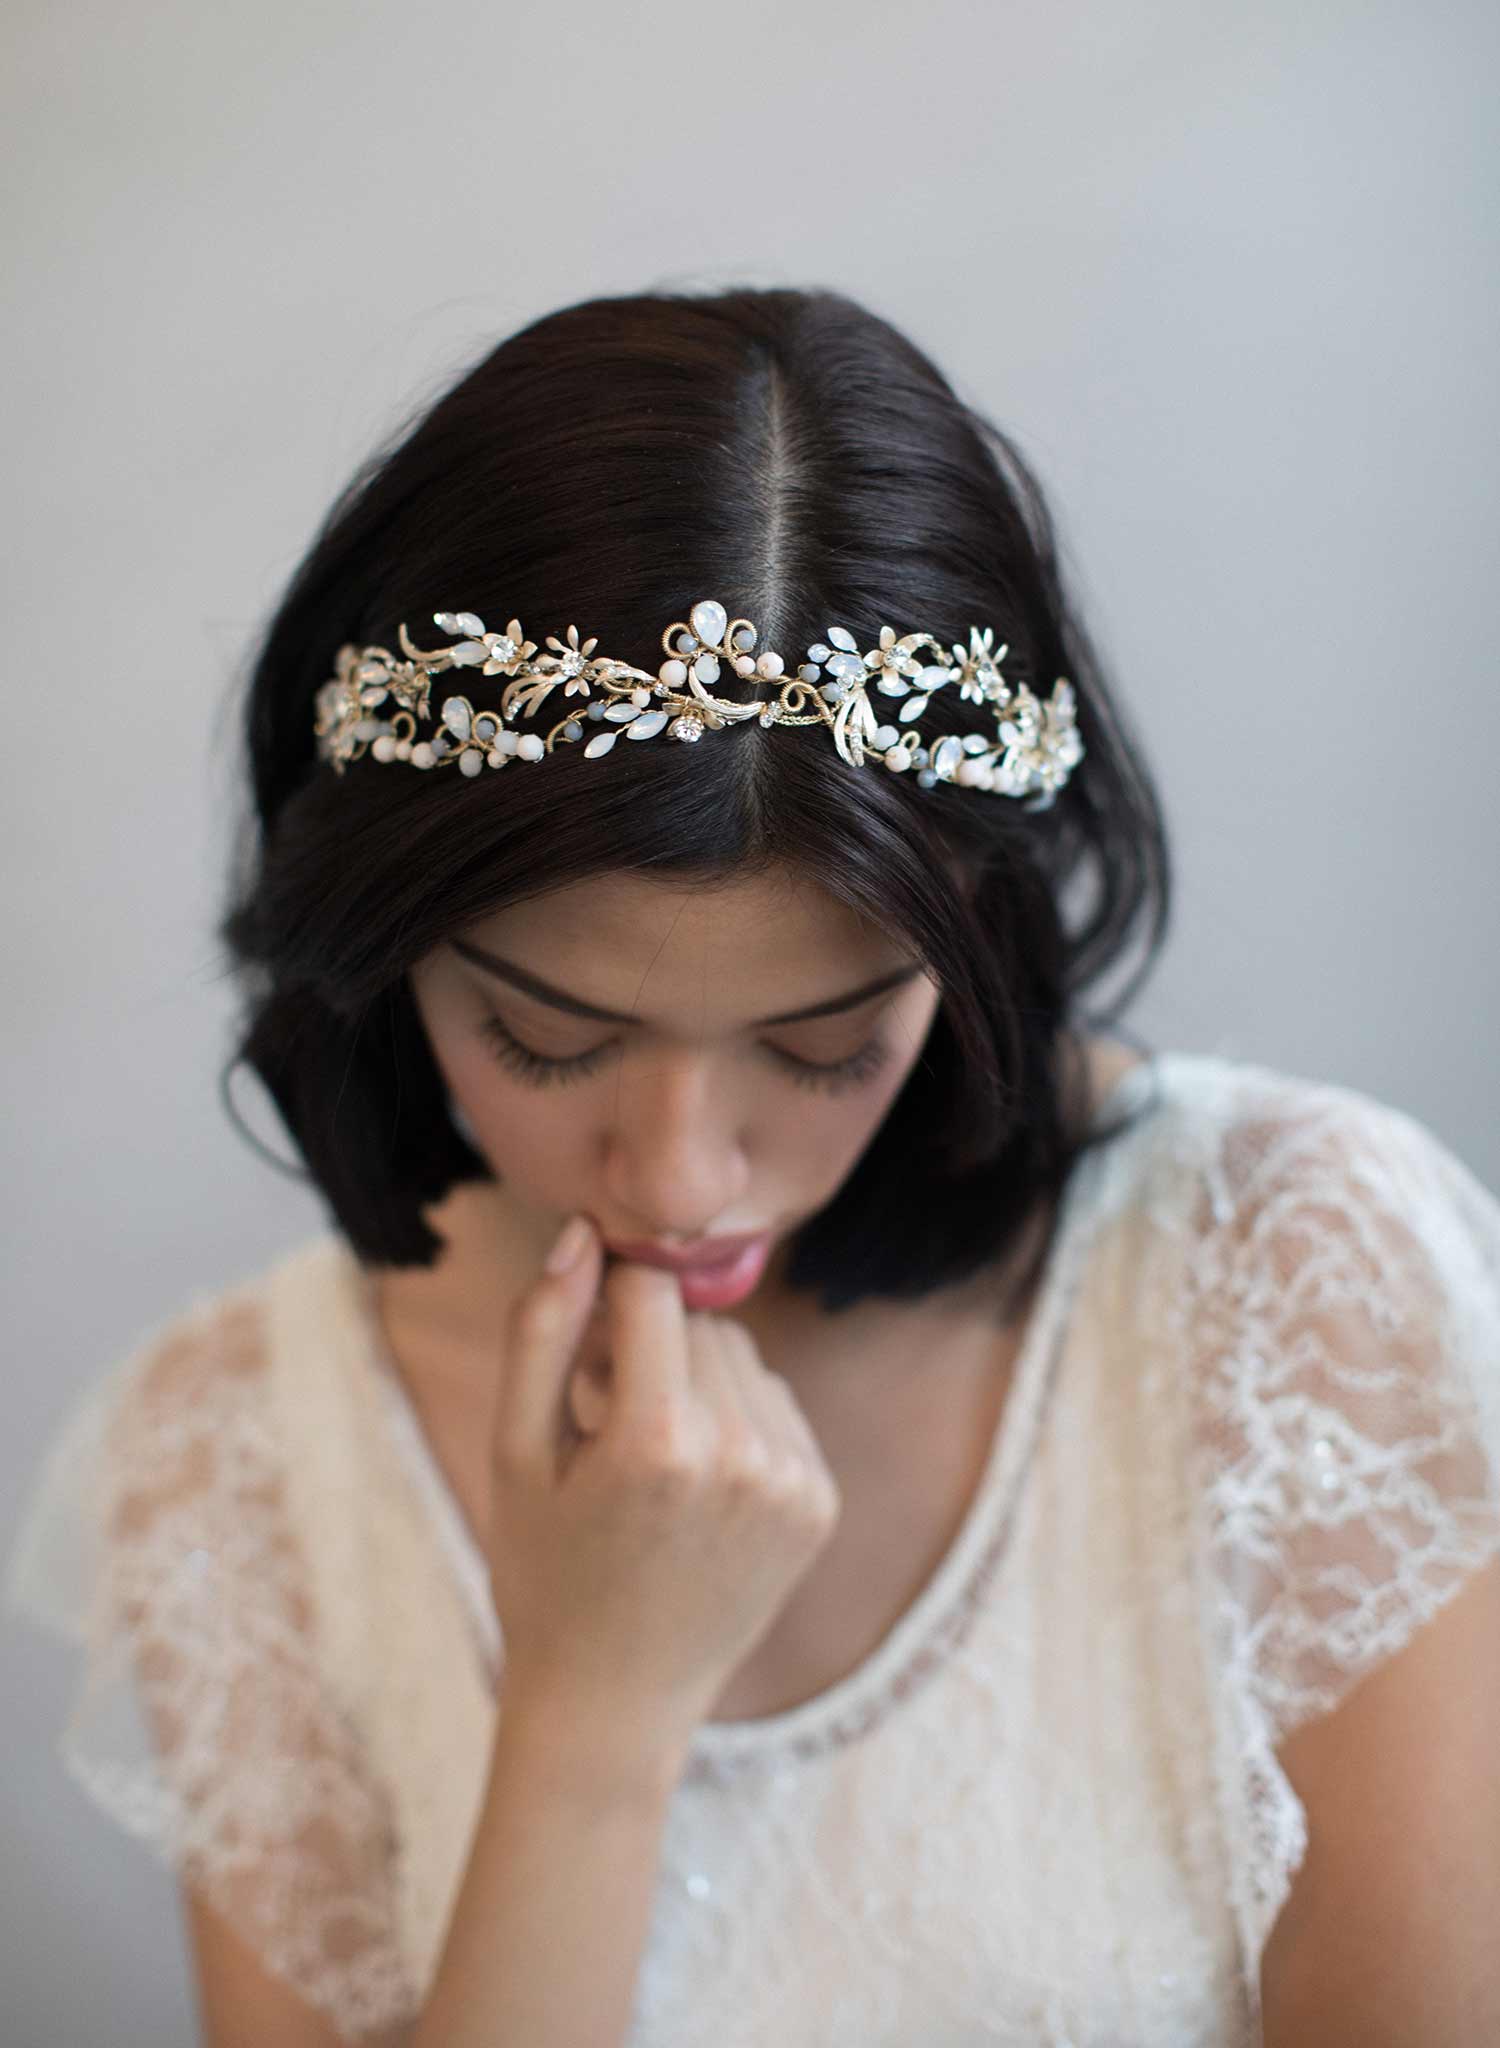 https://www.twigsandhoney.com/cdn/shop/products/800w-bridal-crystal-tiara-twigs-and-honey.jpg?v=1594959770